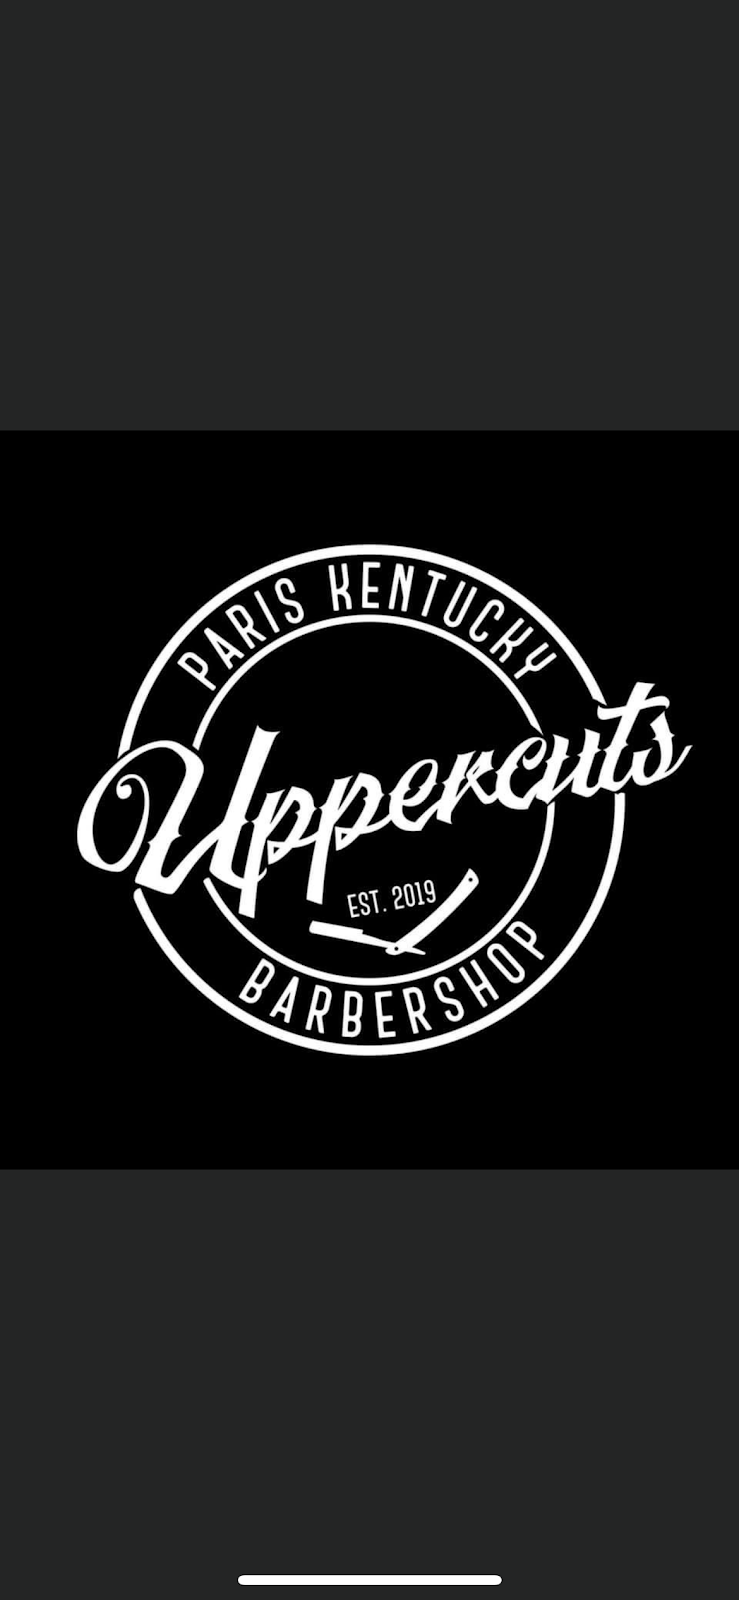 Uppercuts Barbershop | 1335 Main St, Paris, KY 40361 | Phone: (859) 340-4646